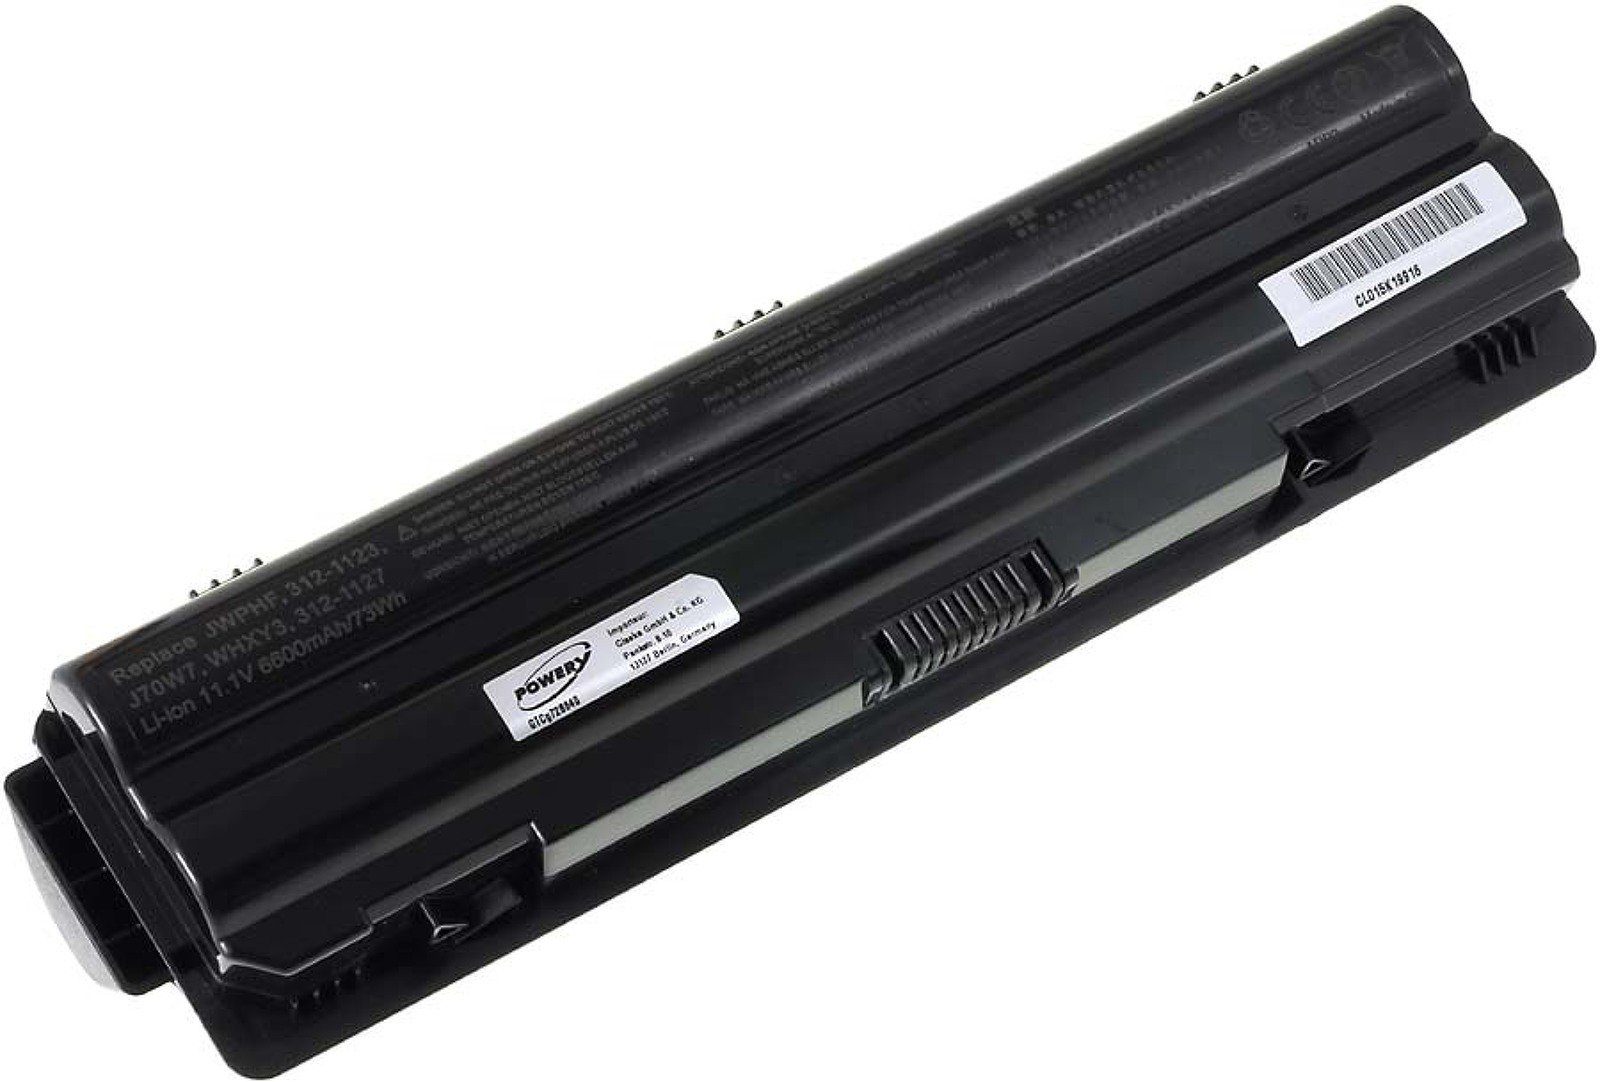 Powerakku für L502X Laptop-Akku mAh Dell (11.1 XPS Akku Powery V) 6600